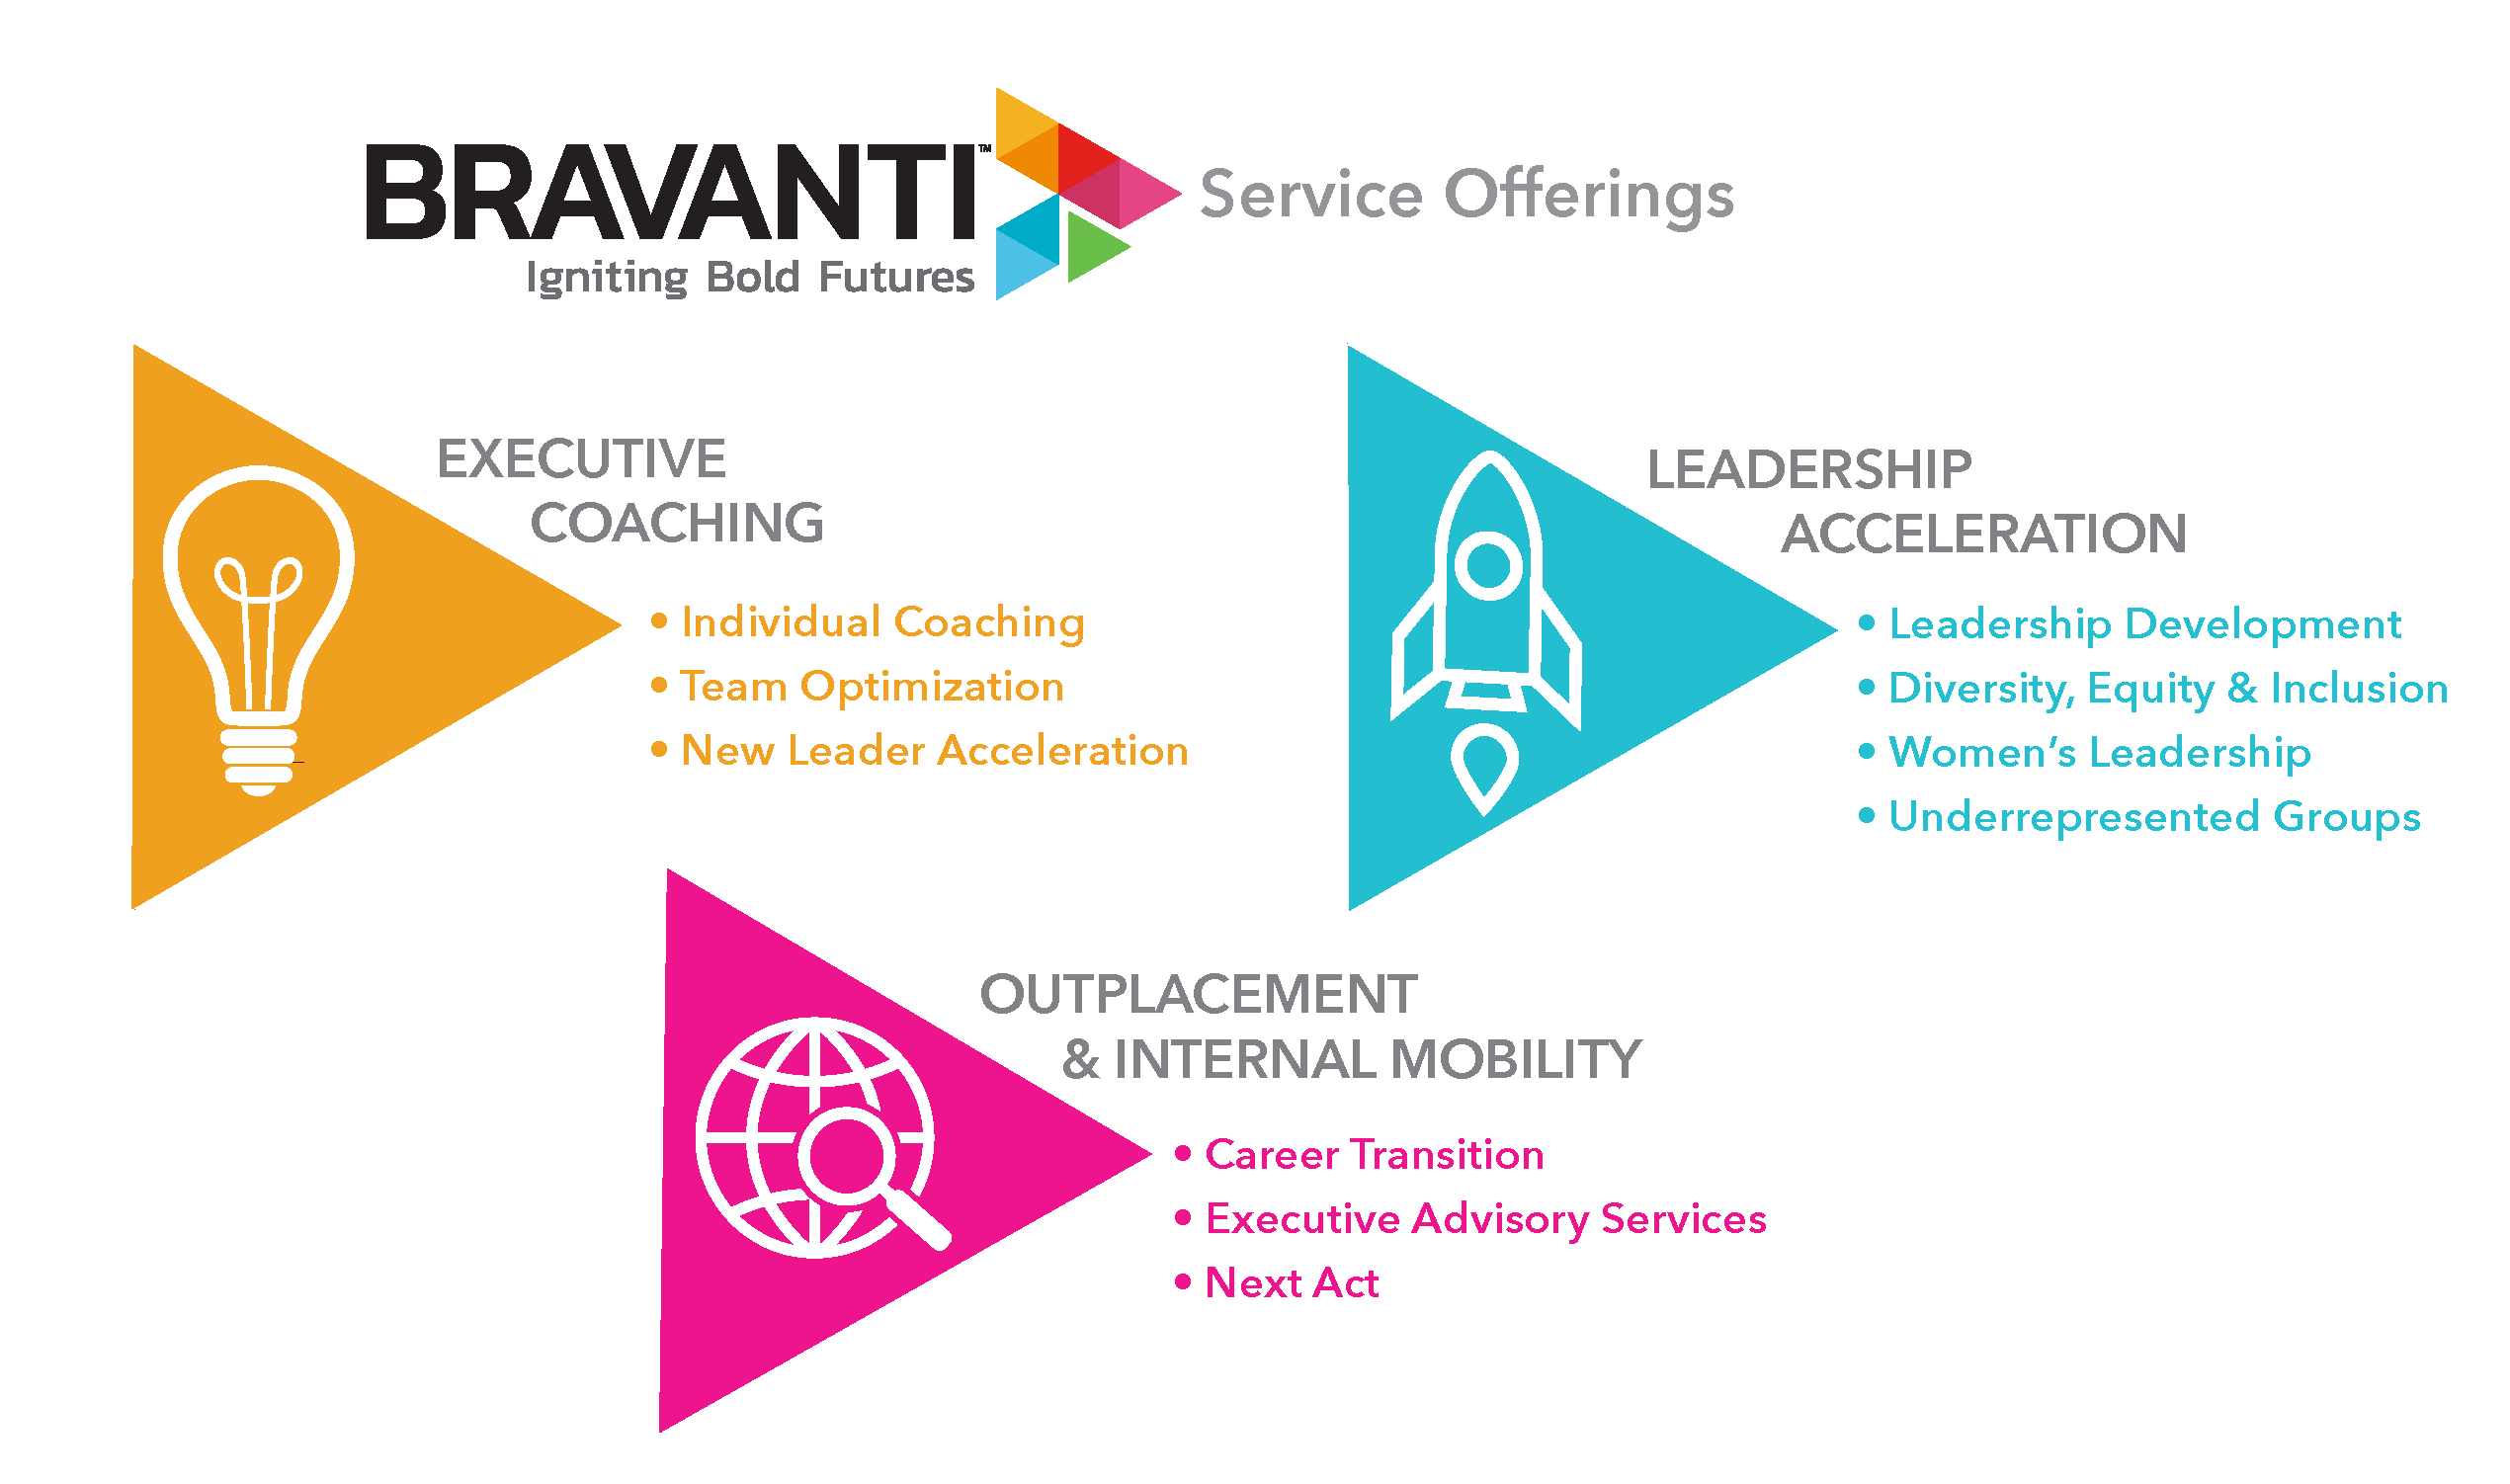 Bravanti Service Offerings